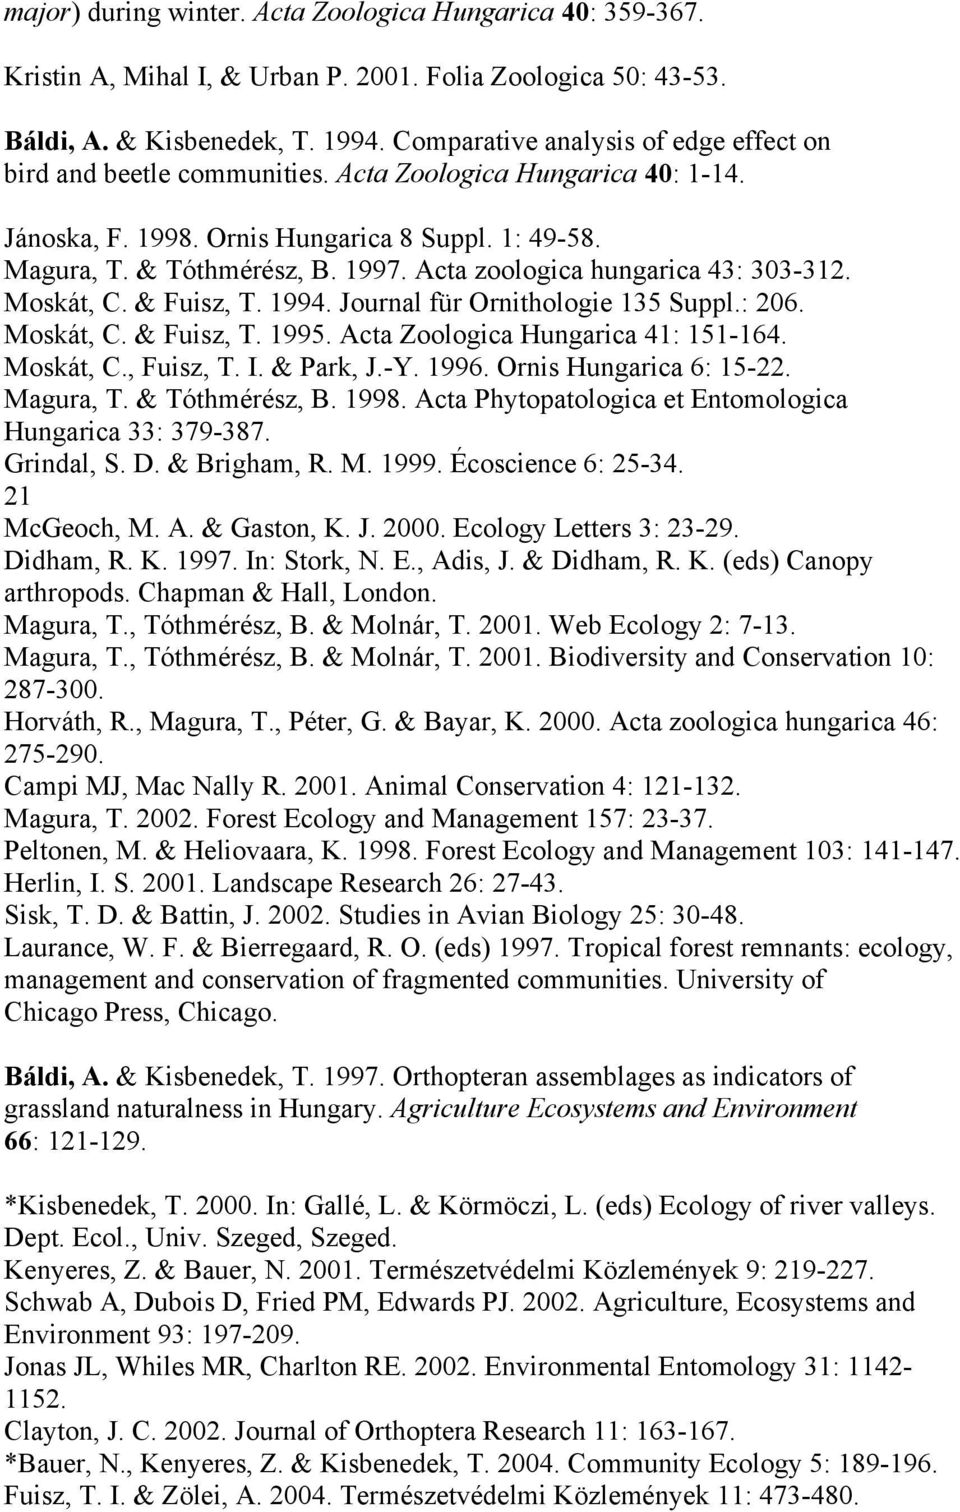 Acta zoologica hungarica 43: 303-312. Moskát, C. & Fuisz, T. 1994. Journal für Ornithologie 135 Suppl.: 206. Moskát, C. & Fuisz, T. 1995. Acta Zoologica Hungarica 41: 151-164. Moskát, C., Fuisz, T. I.